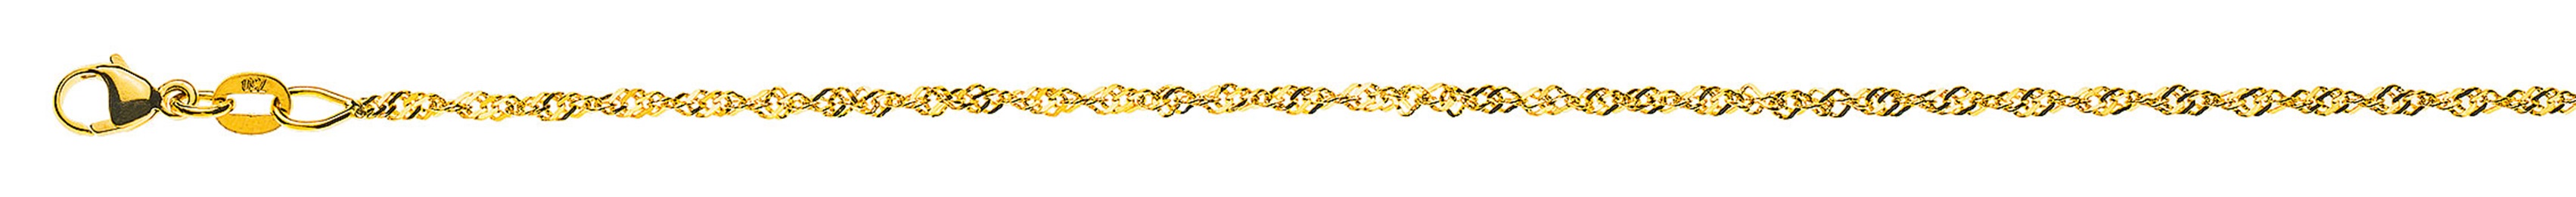 AURONOS Prestige Necklace Yellow Gold 18K Singapore Chain 50cm 1.5mm